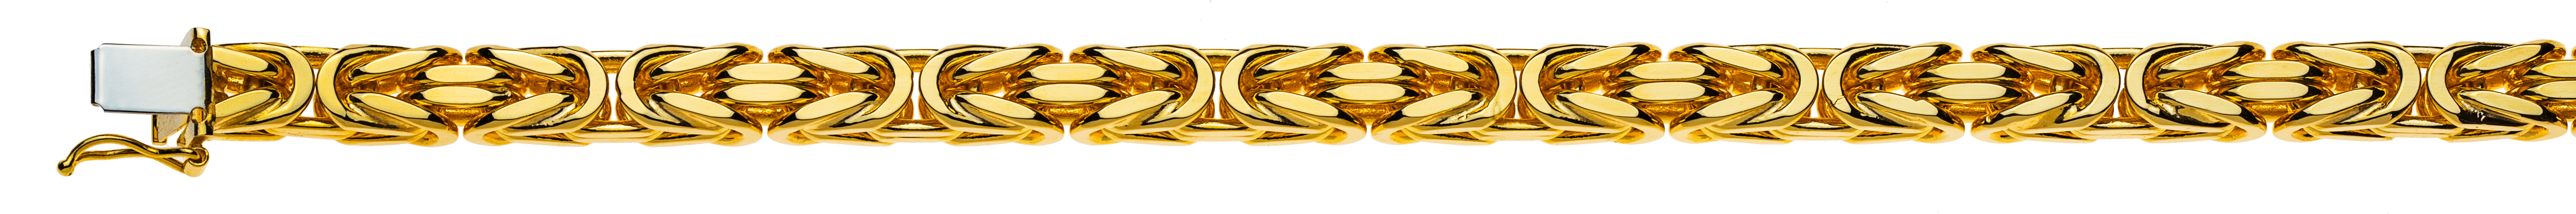 AURONOS Prestige Collier en or jaune 18K chaîne royale 60cm 6mm